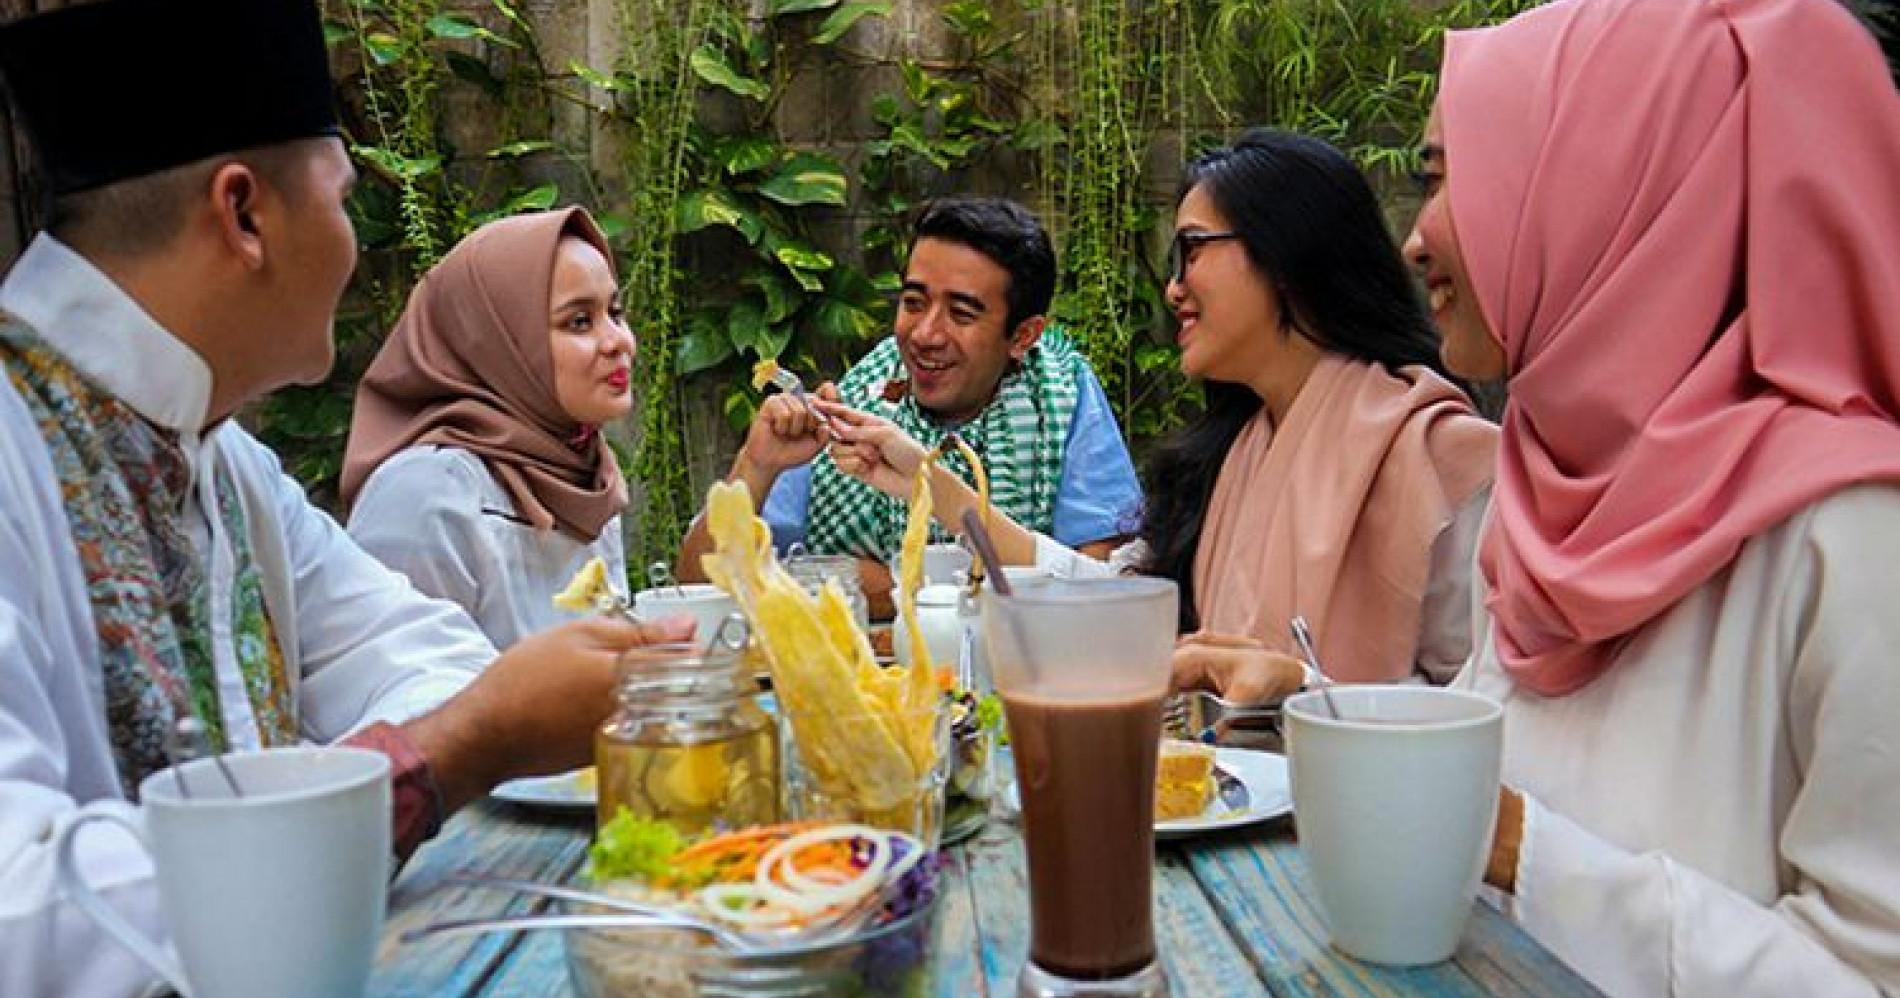 Ilustrasi Kumpul Bersama Keluarga Saat Ramadan (Sumber gambar: kompas.com)